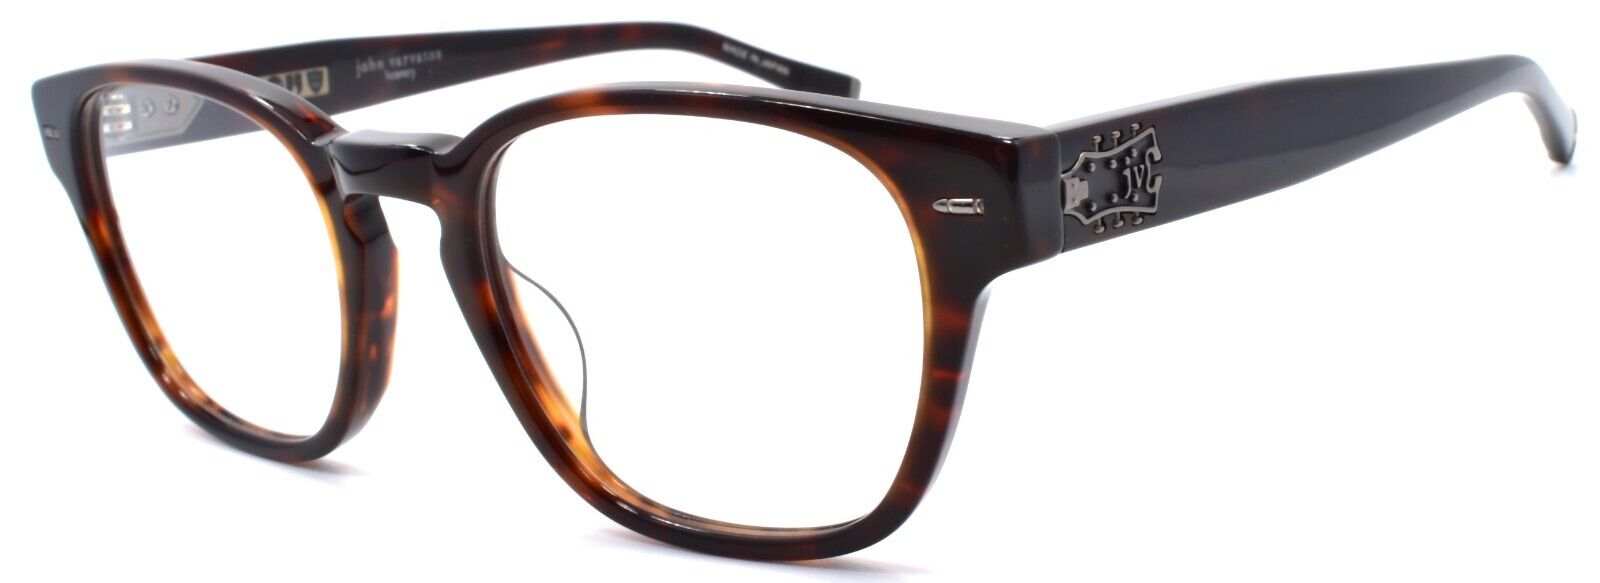 1-John Varvatos V369 Men's Eyeglasses Frames 51-20-145 Brown Japan-751286305517-IKSpecs